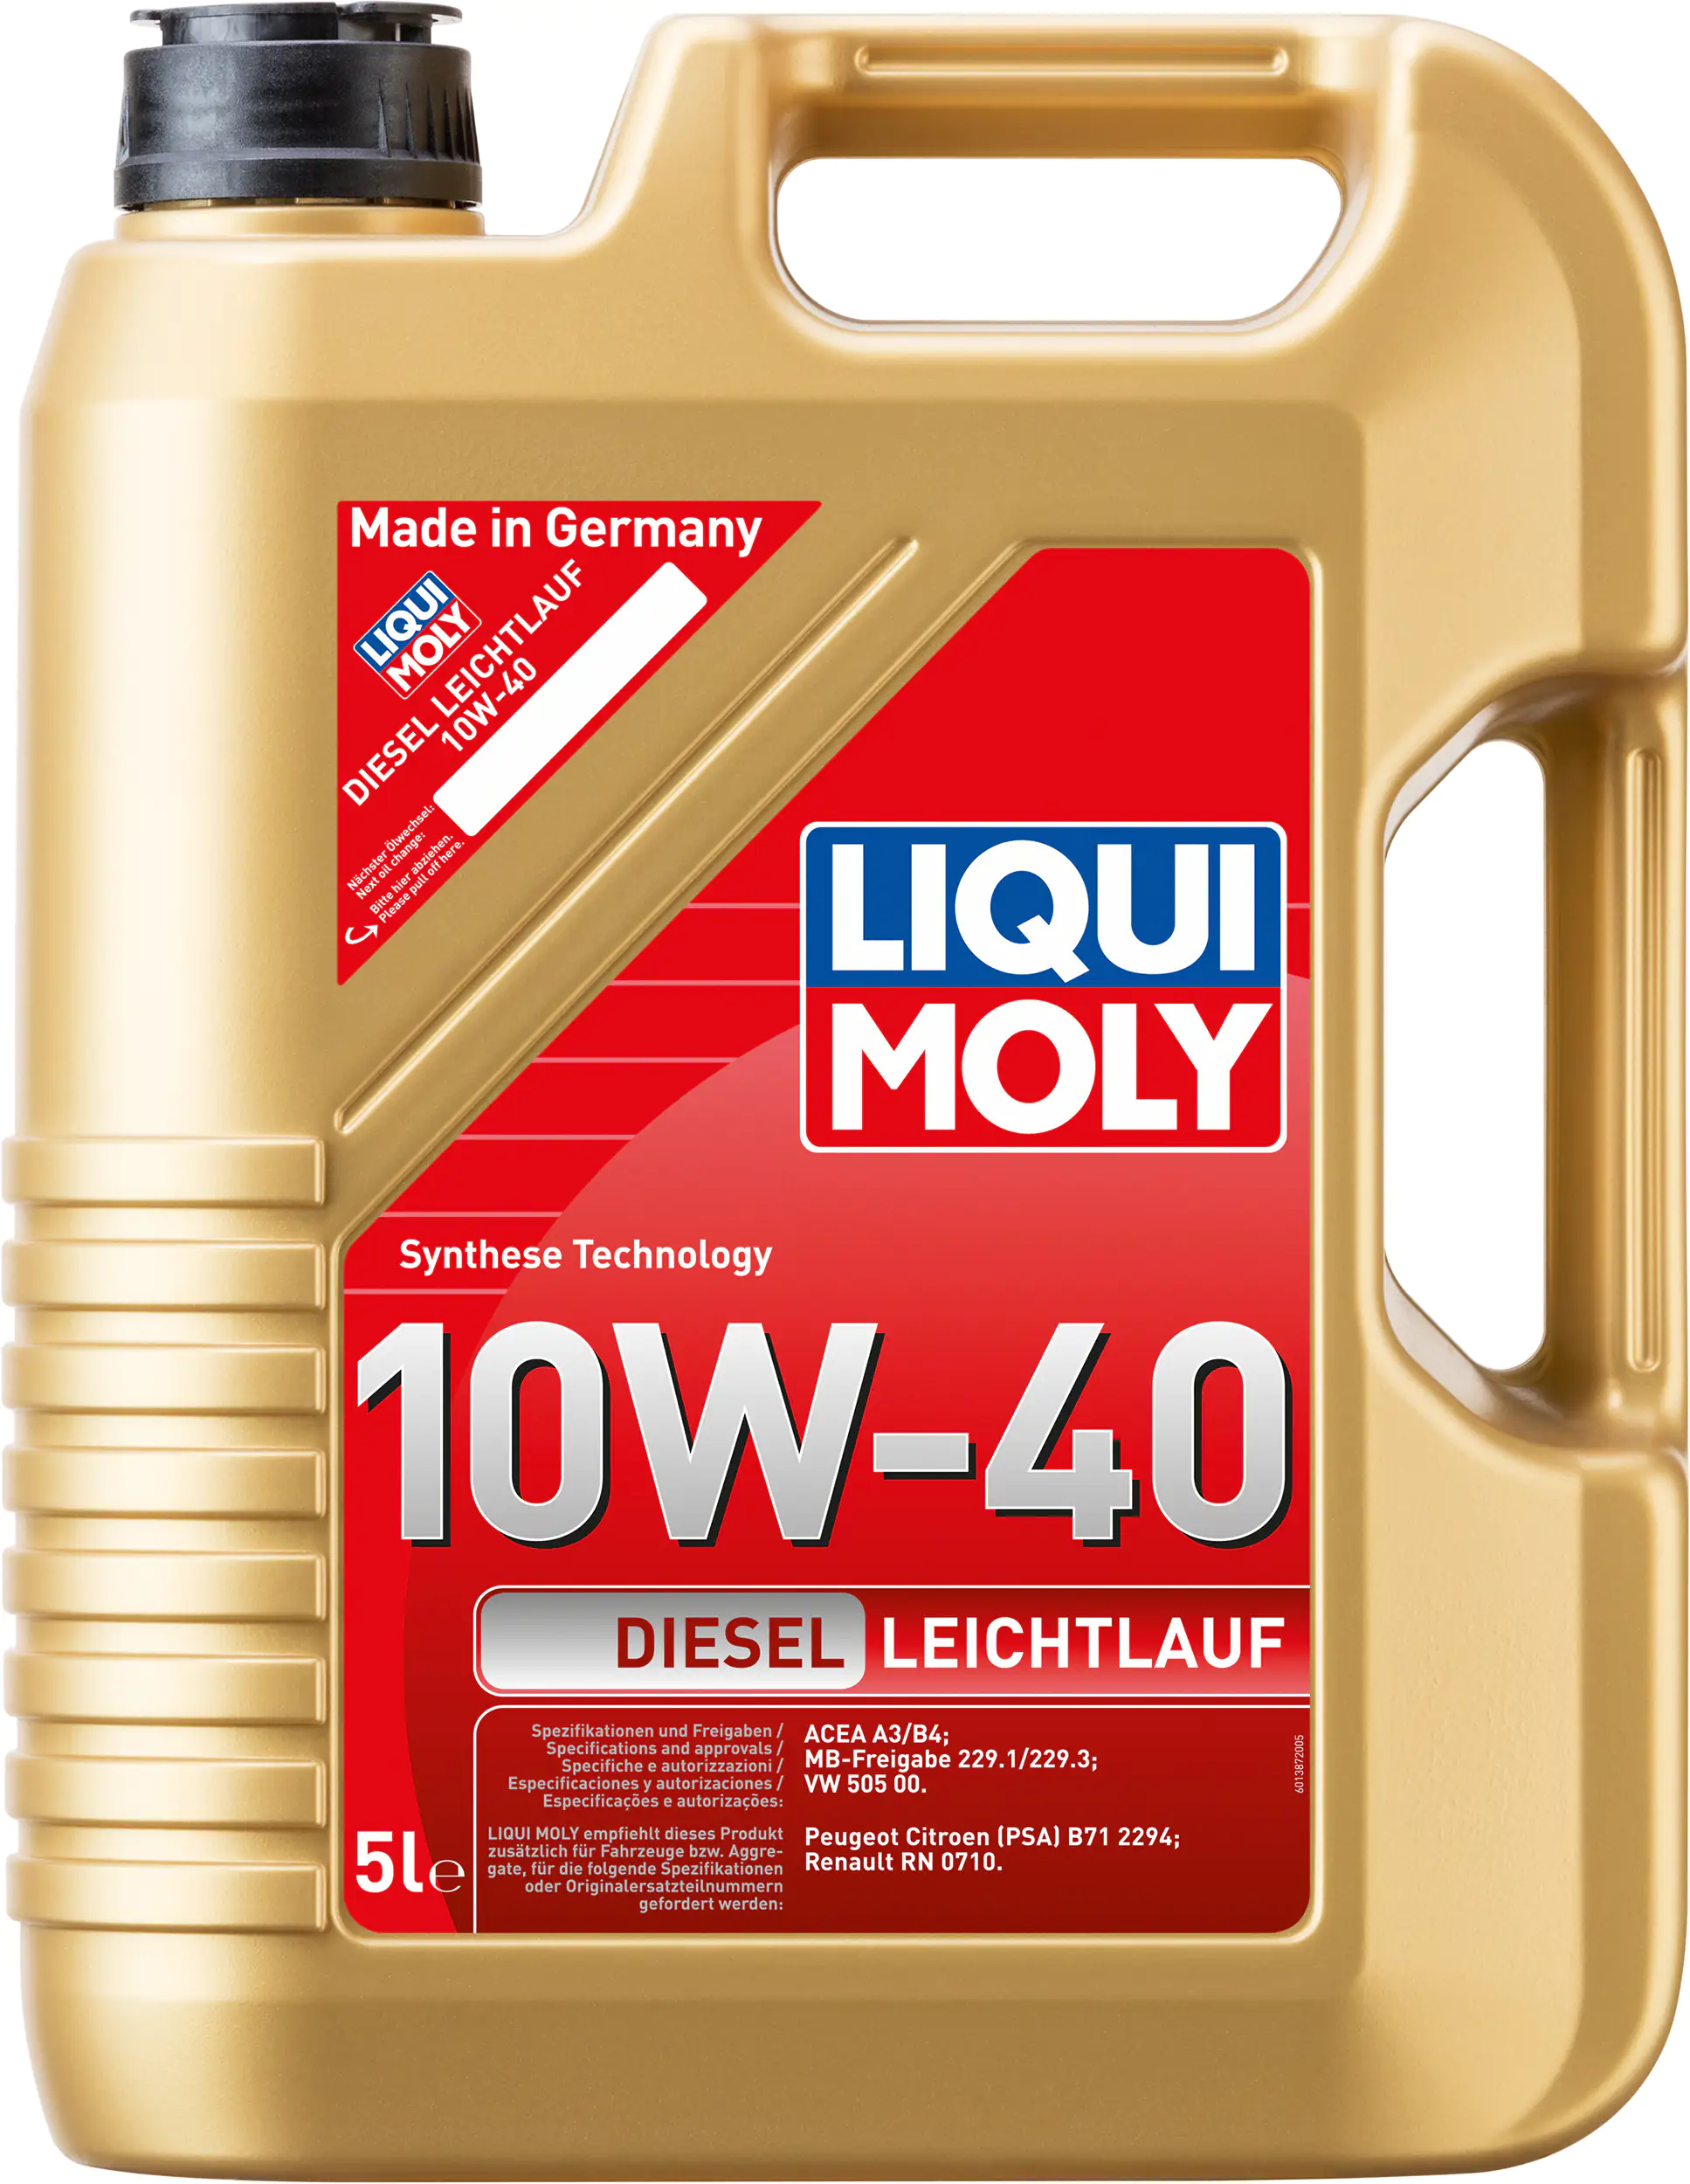 Liqui Moly Motoröl Diesel Leichtlauföl 10W-40 5 L kaufen